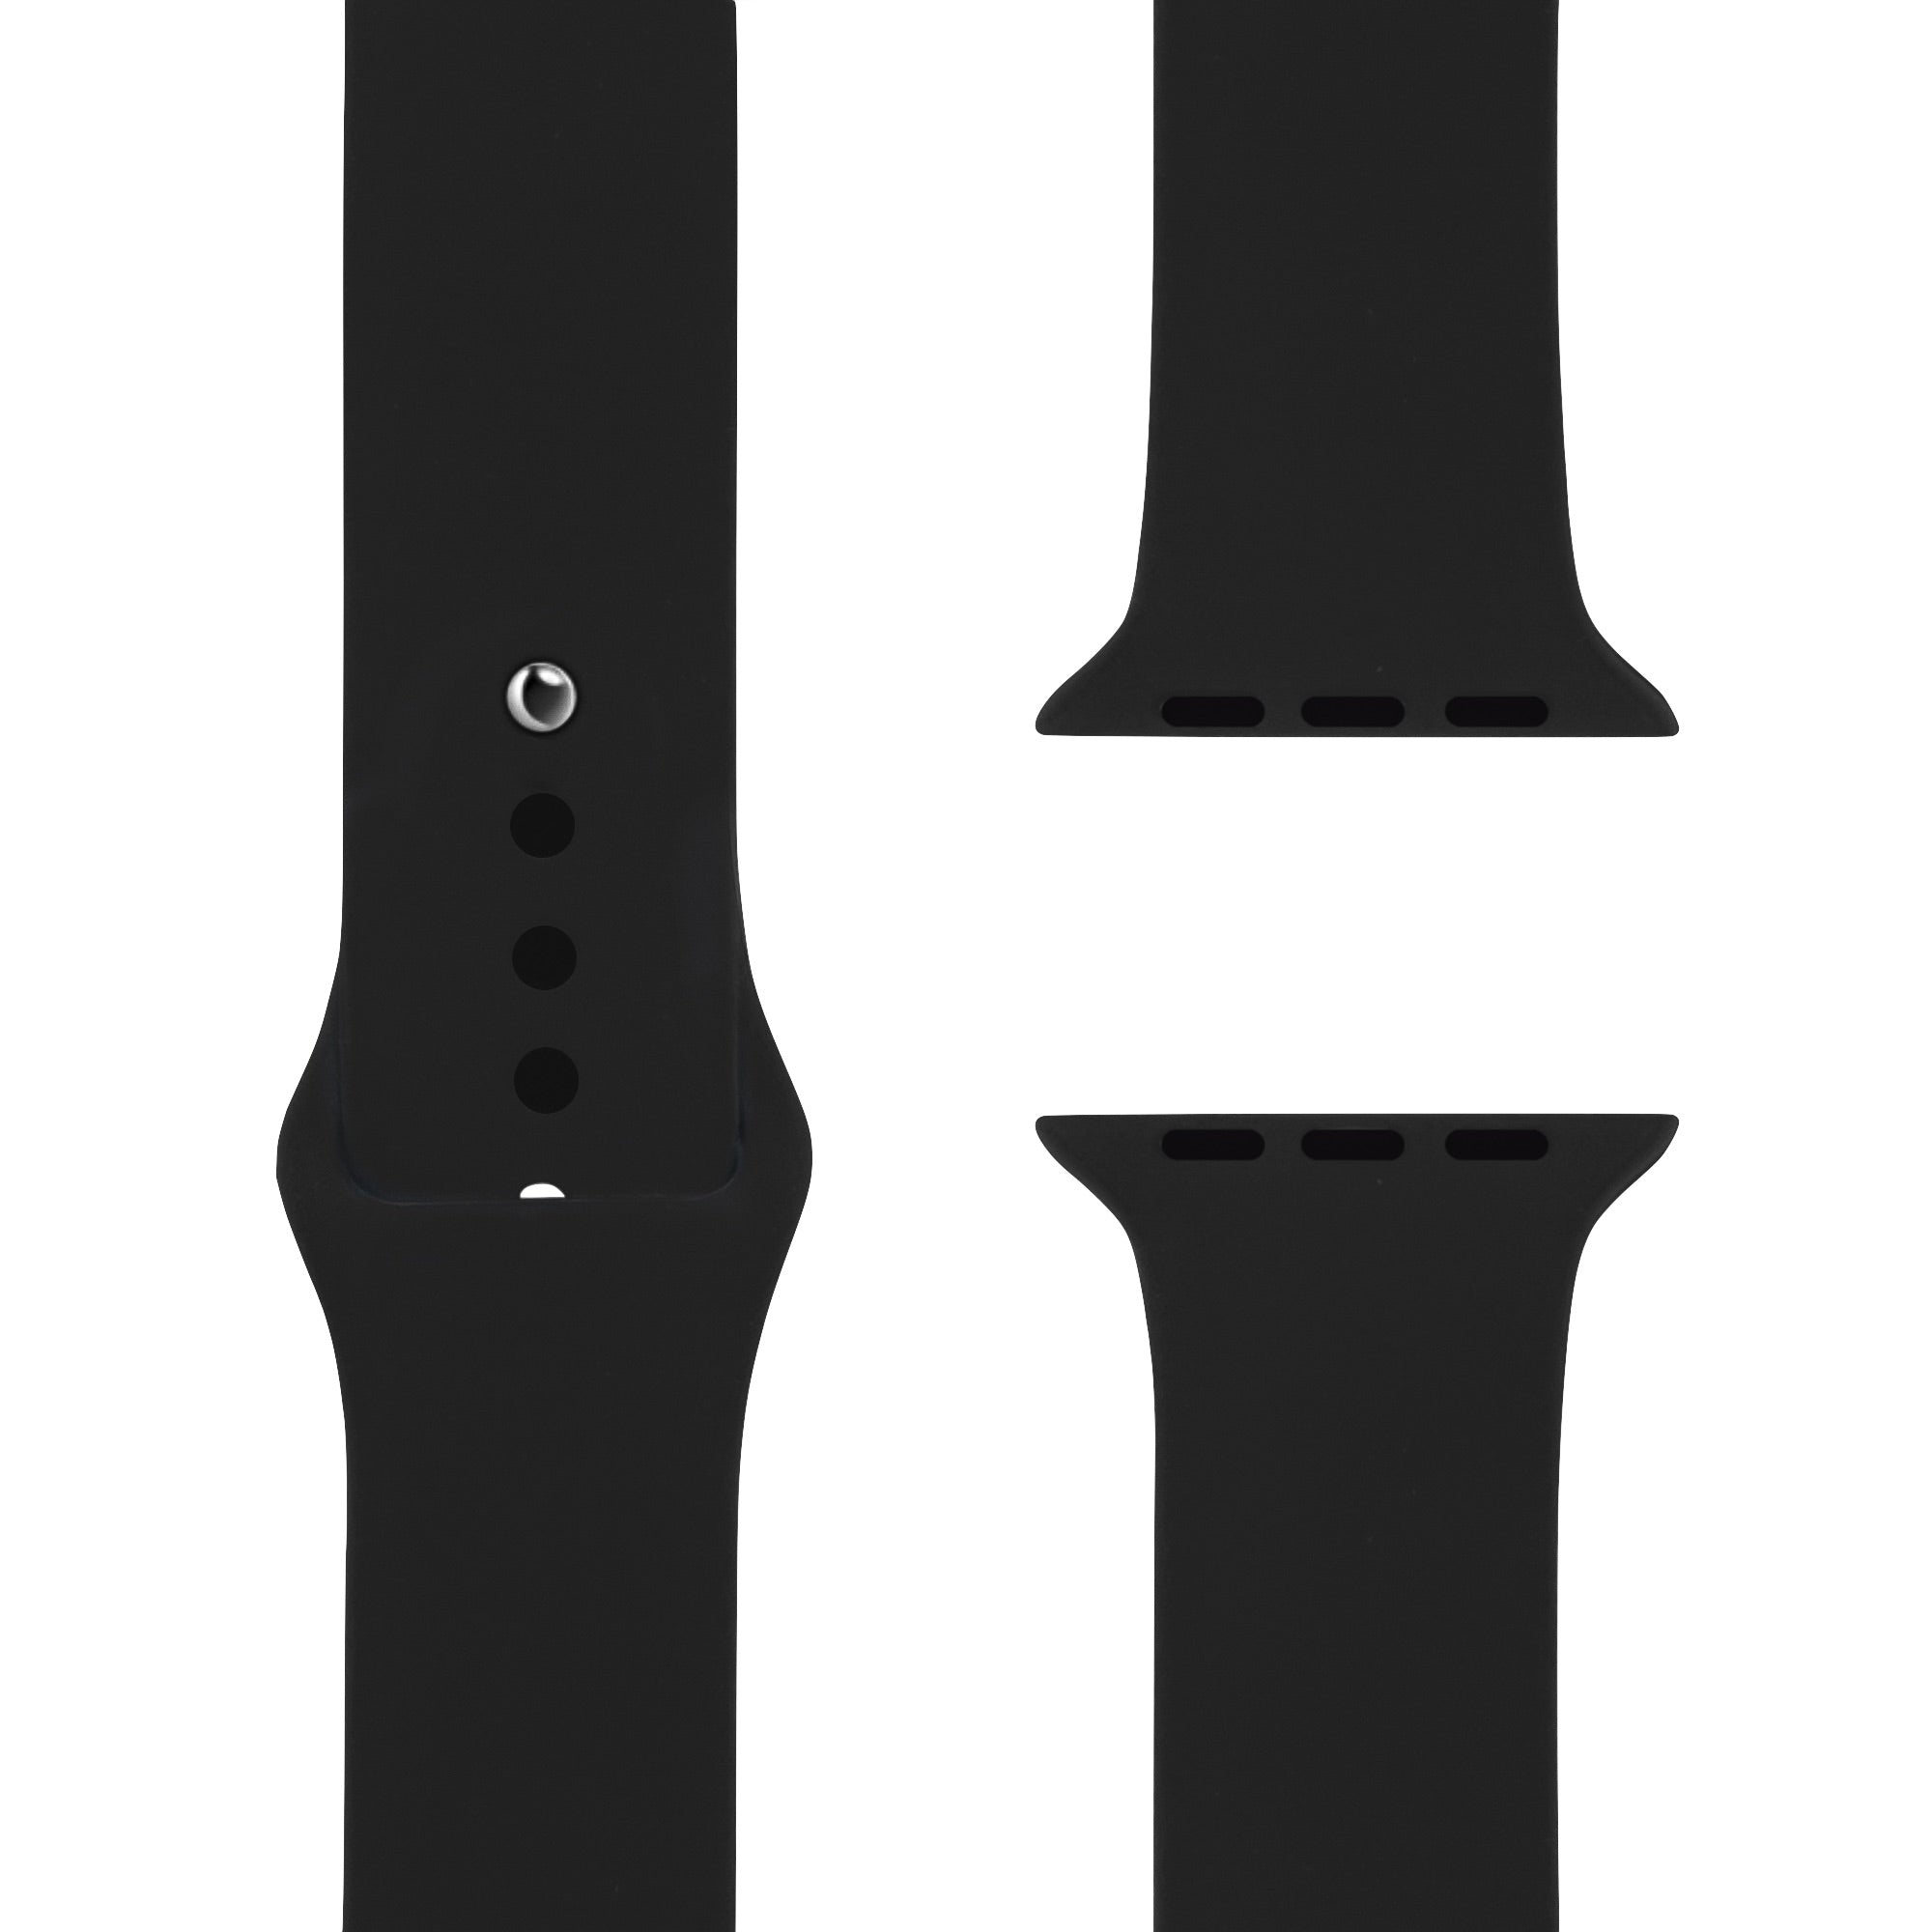 Black Silikon Loop | Armband für Apple Watch (Schwarz)-Apple Watch Armbänder kaufen